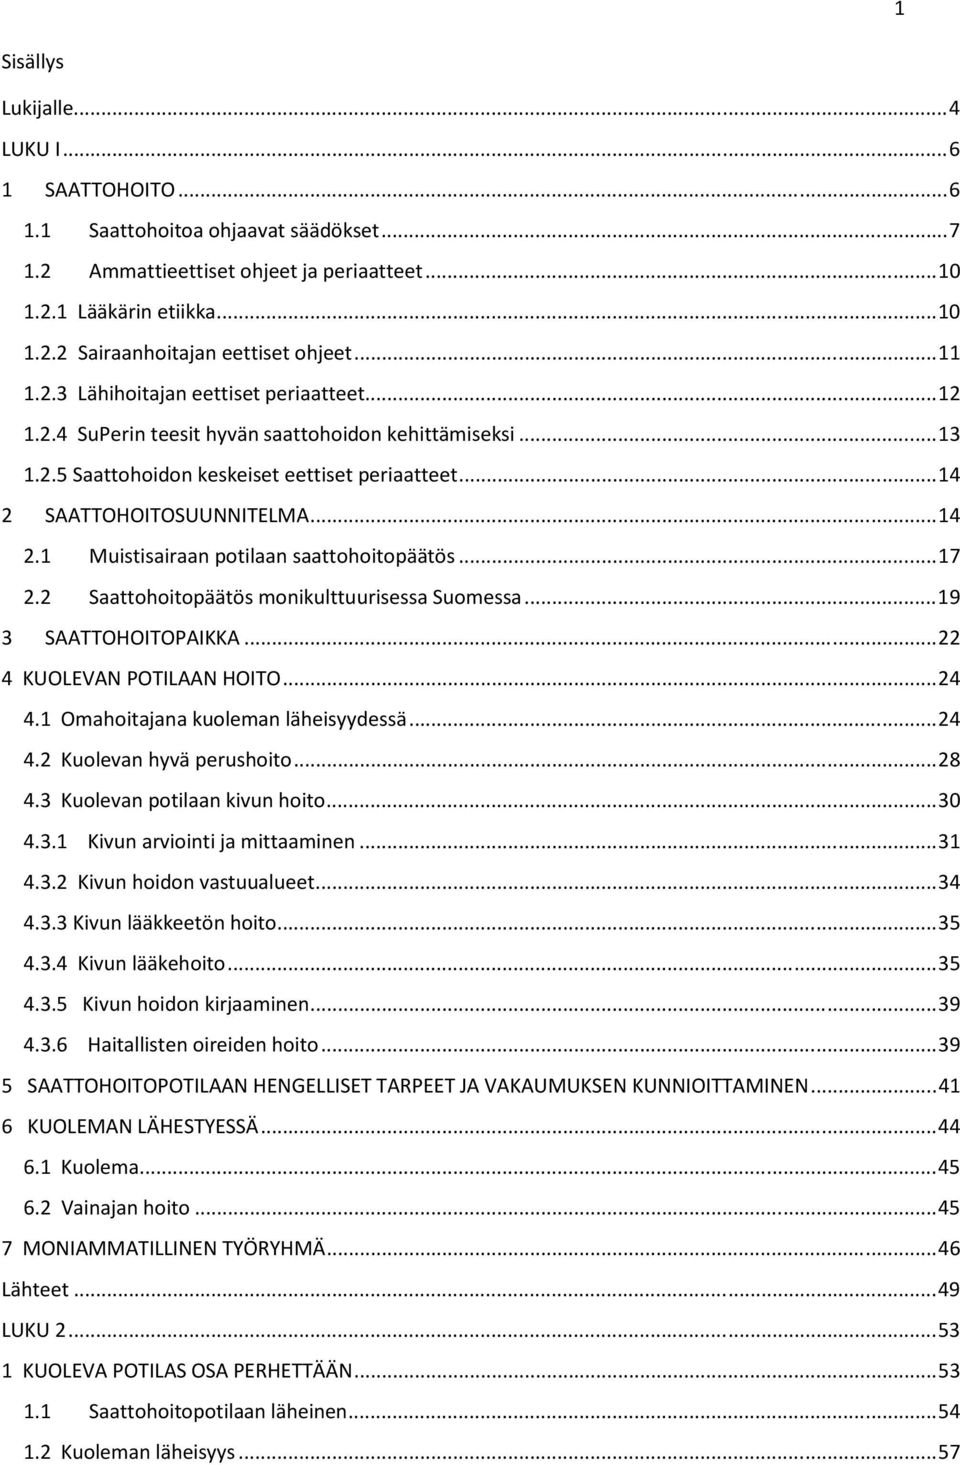 SAATTOHOITOSUUNNITELMA... 14 2.1 Muistisairaan potilaan saattohoitopäätös... 17 2.2 Saattohoitopäätös monikulttuurisessa Suomessa... 19 3 SAATTOHOITOPAIKKA... 22 4 KUOLEVAN POTILAAN HOITO... 24 4.